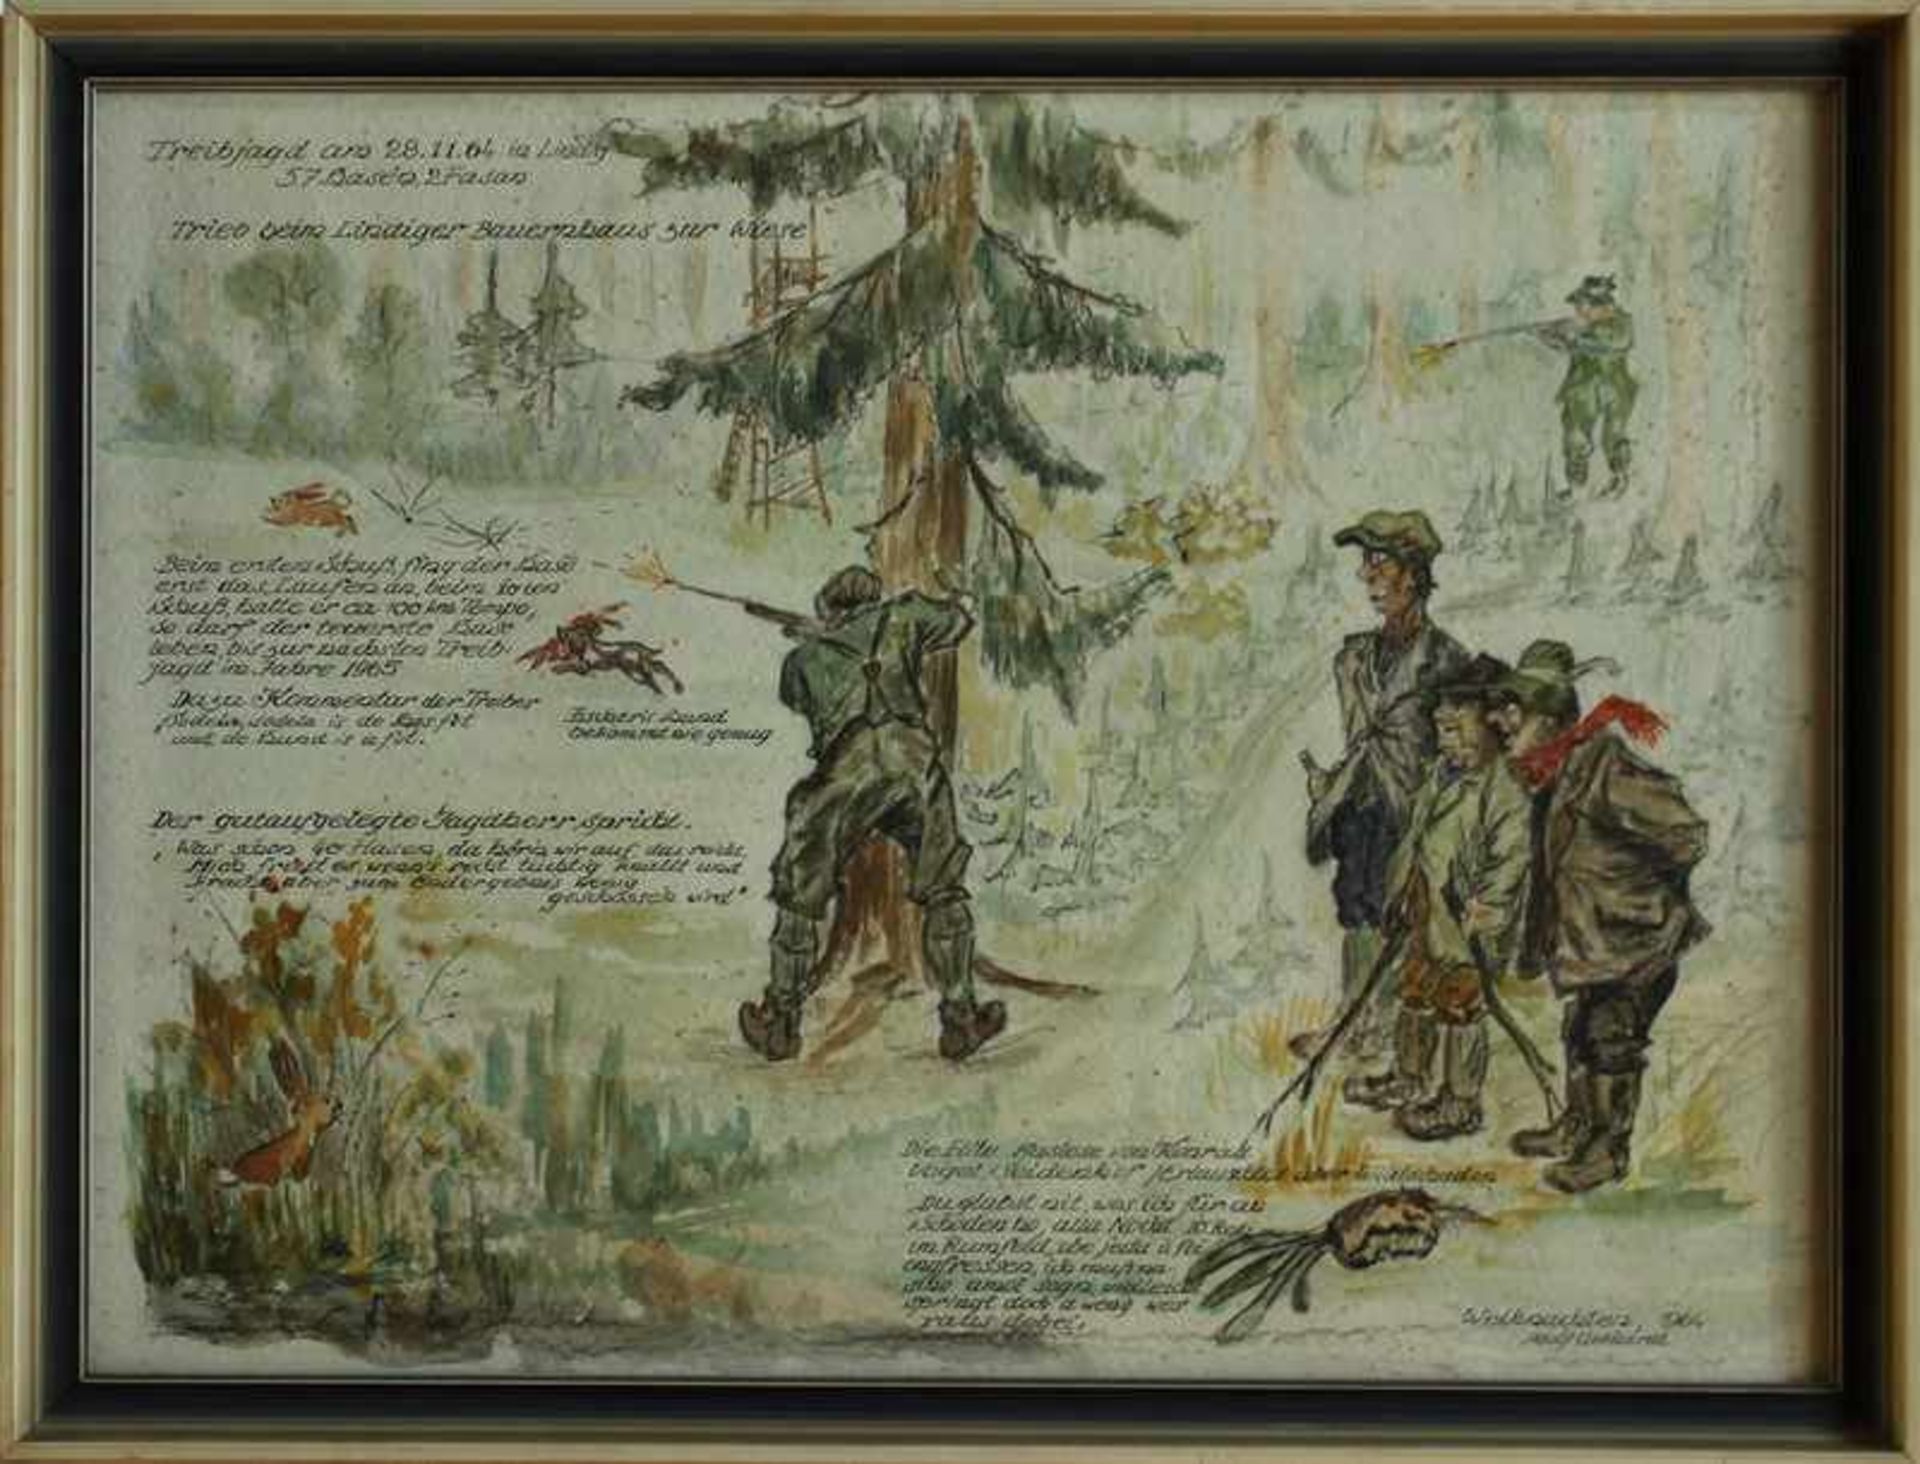 Gebhardt, Adolf "Jagdszene im Wald", bez. "Treibjagd am 28.11.64 in Lindig, 57 Hasen, 2 Fasan -